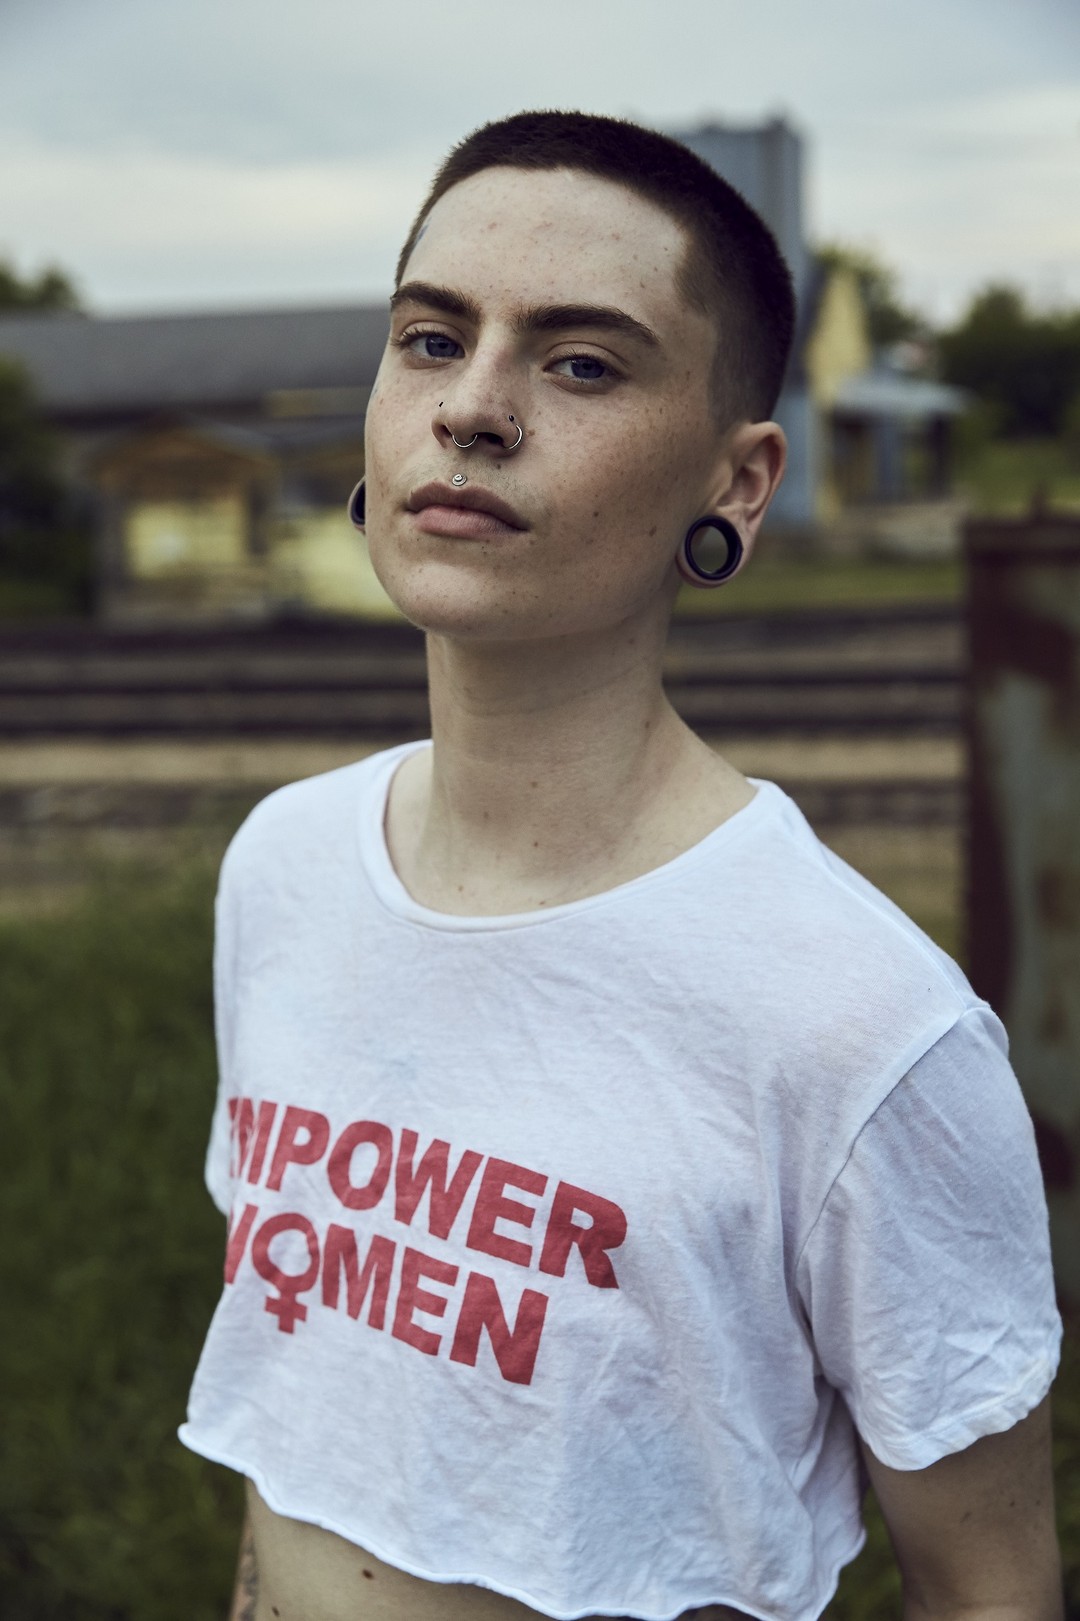 Фотопроект Сорайи Заман, посвященный трансмужчинам США